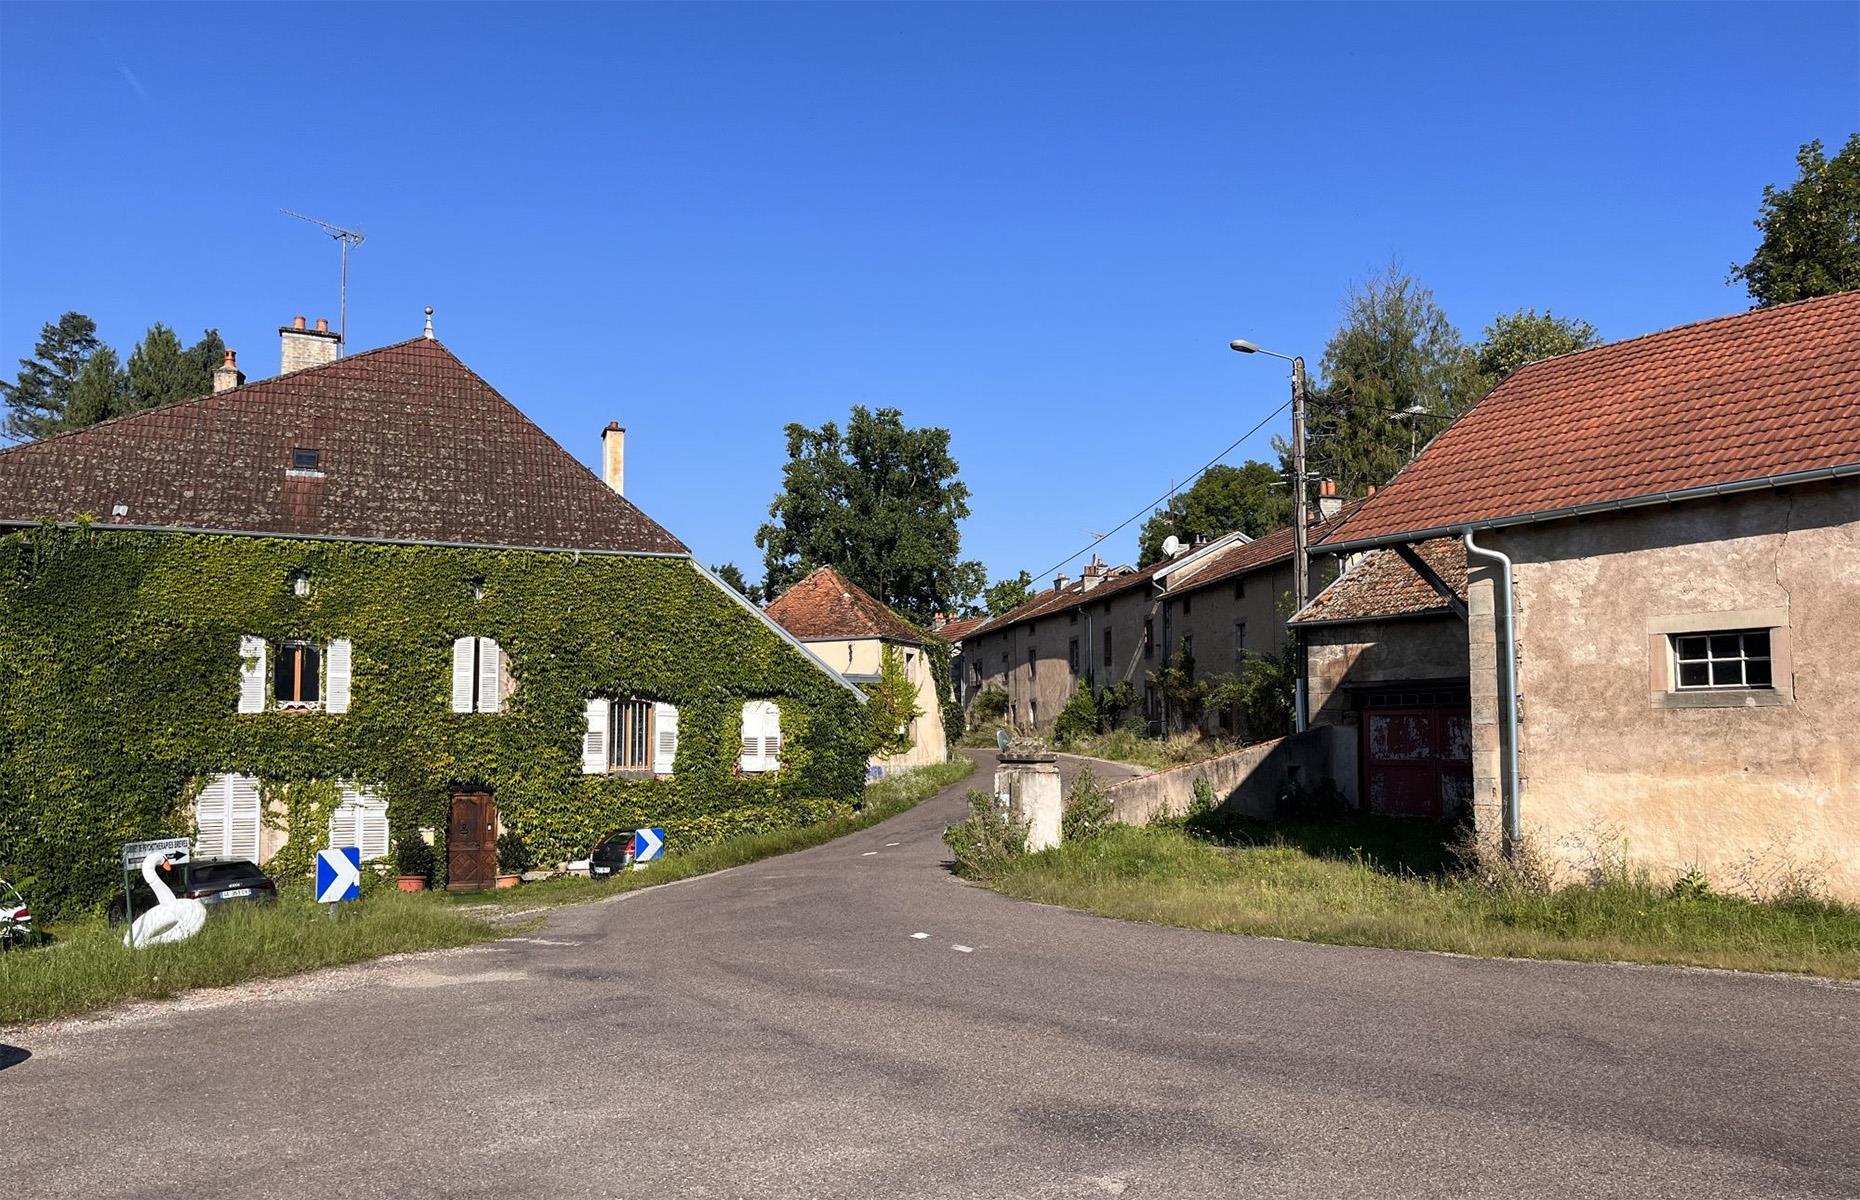 Le Beuchot, Haute-Saône, France: £2 million ($2.5m)